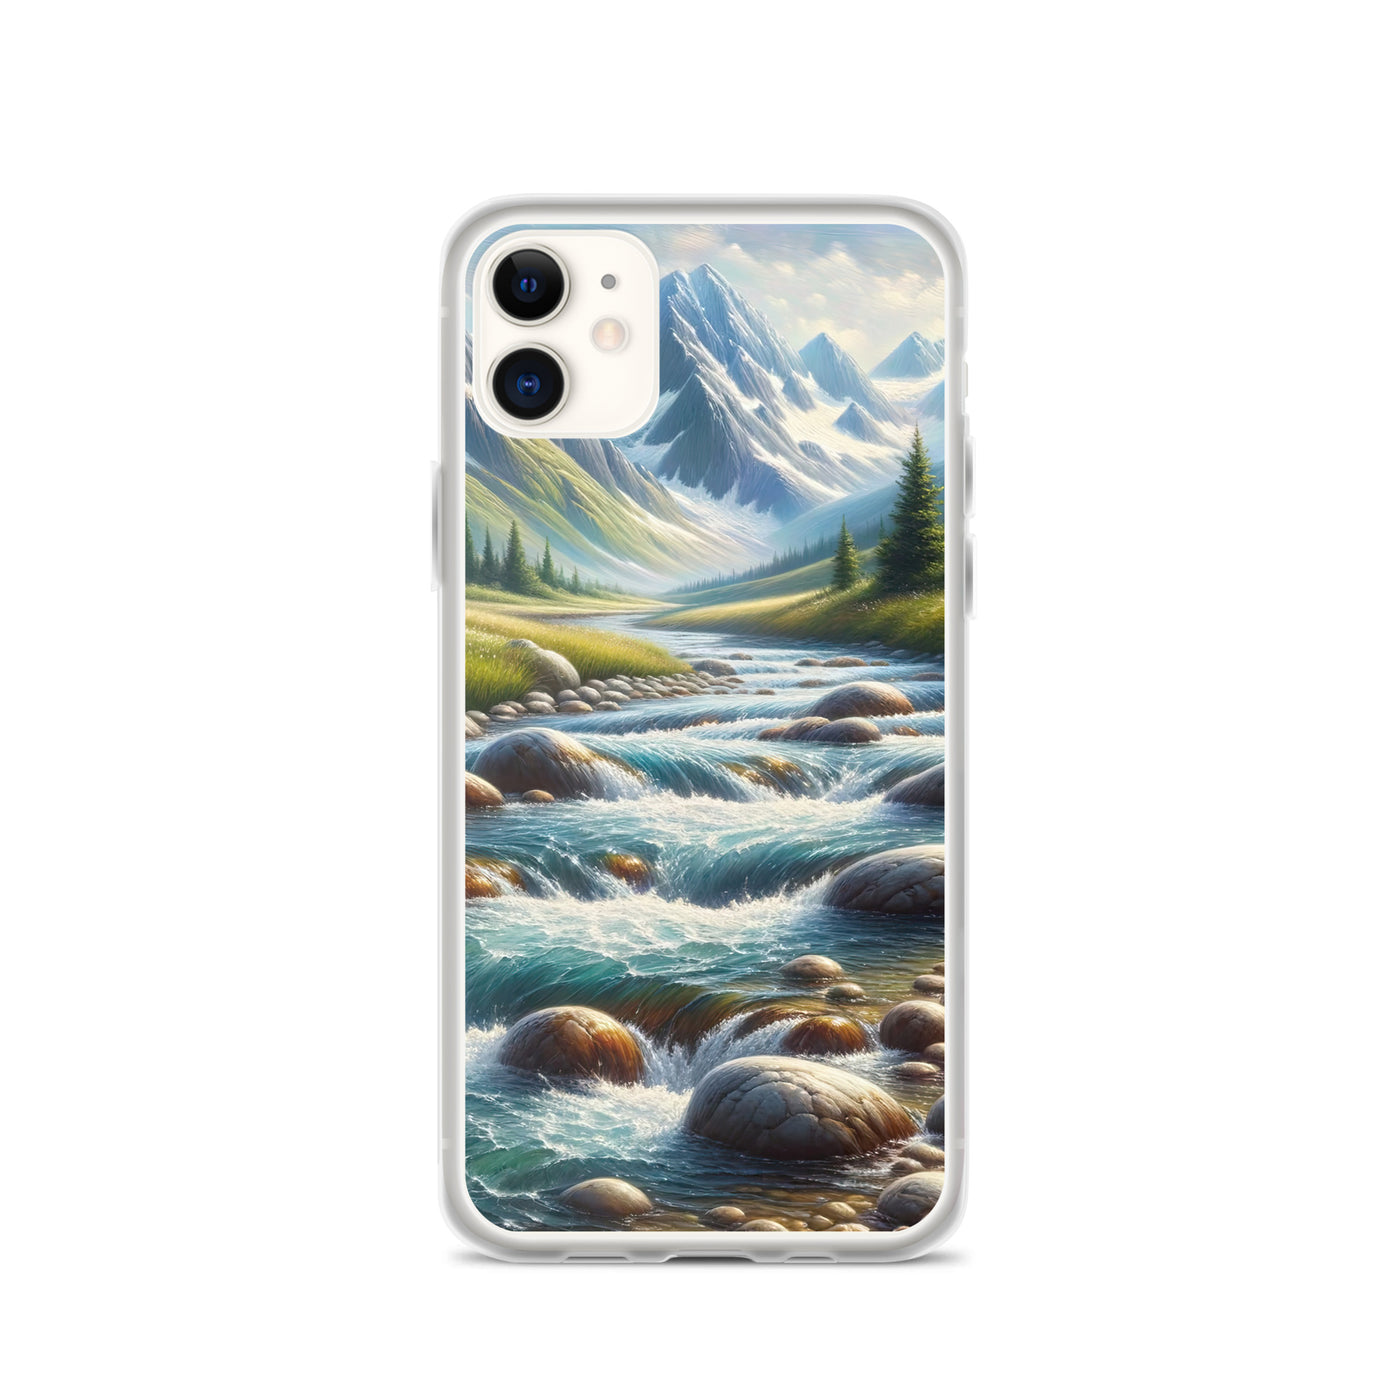 Ölgemälde eines Gebirgsbachs durch felsige Landschaft - iPhone Schutzhülle (durchsichtig) berge xxx yyy zzz iPhone 11